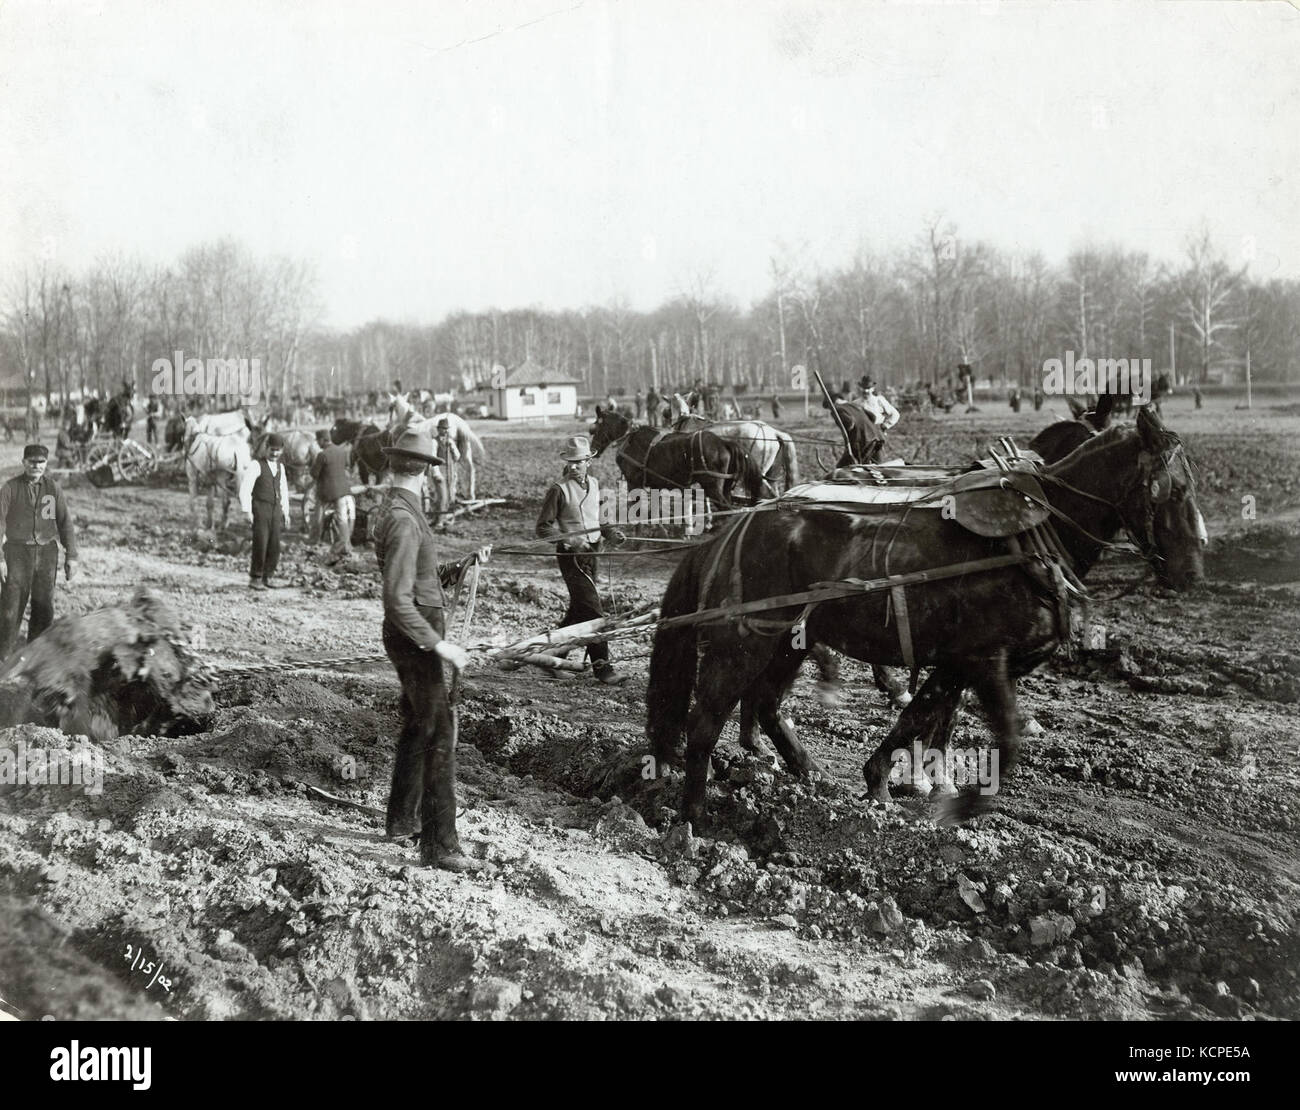 Chevaux de trait tirant un moignon au cours de l'excavation pour la rivière des Peres à Forest Park pendant la phase de construction de la Foire mondiale de 1904, 15 février 1902 Banque D'Images